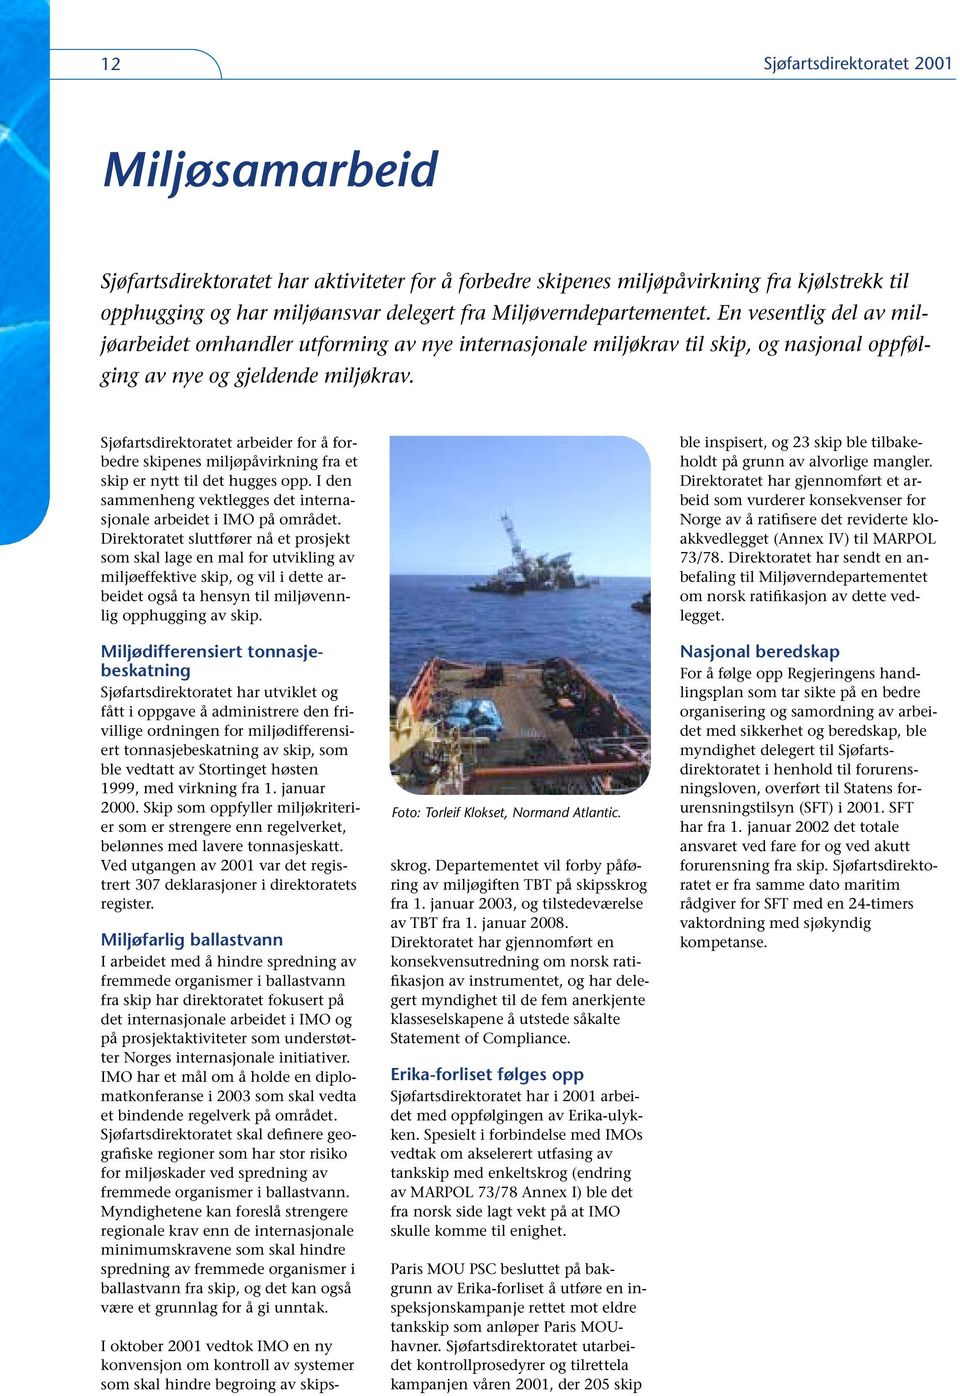 Sjøfartsdirektoratet arbeider for å forbedre skipenes miljøpåvirkning fra et skip er nytt til det hugges opp. I den sammenheng vektlegges det internasjonale arbeidet i IMO på området.